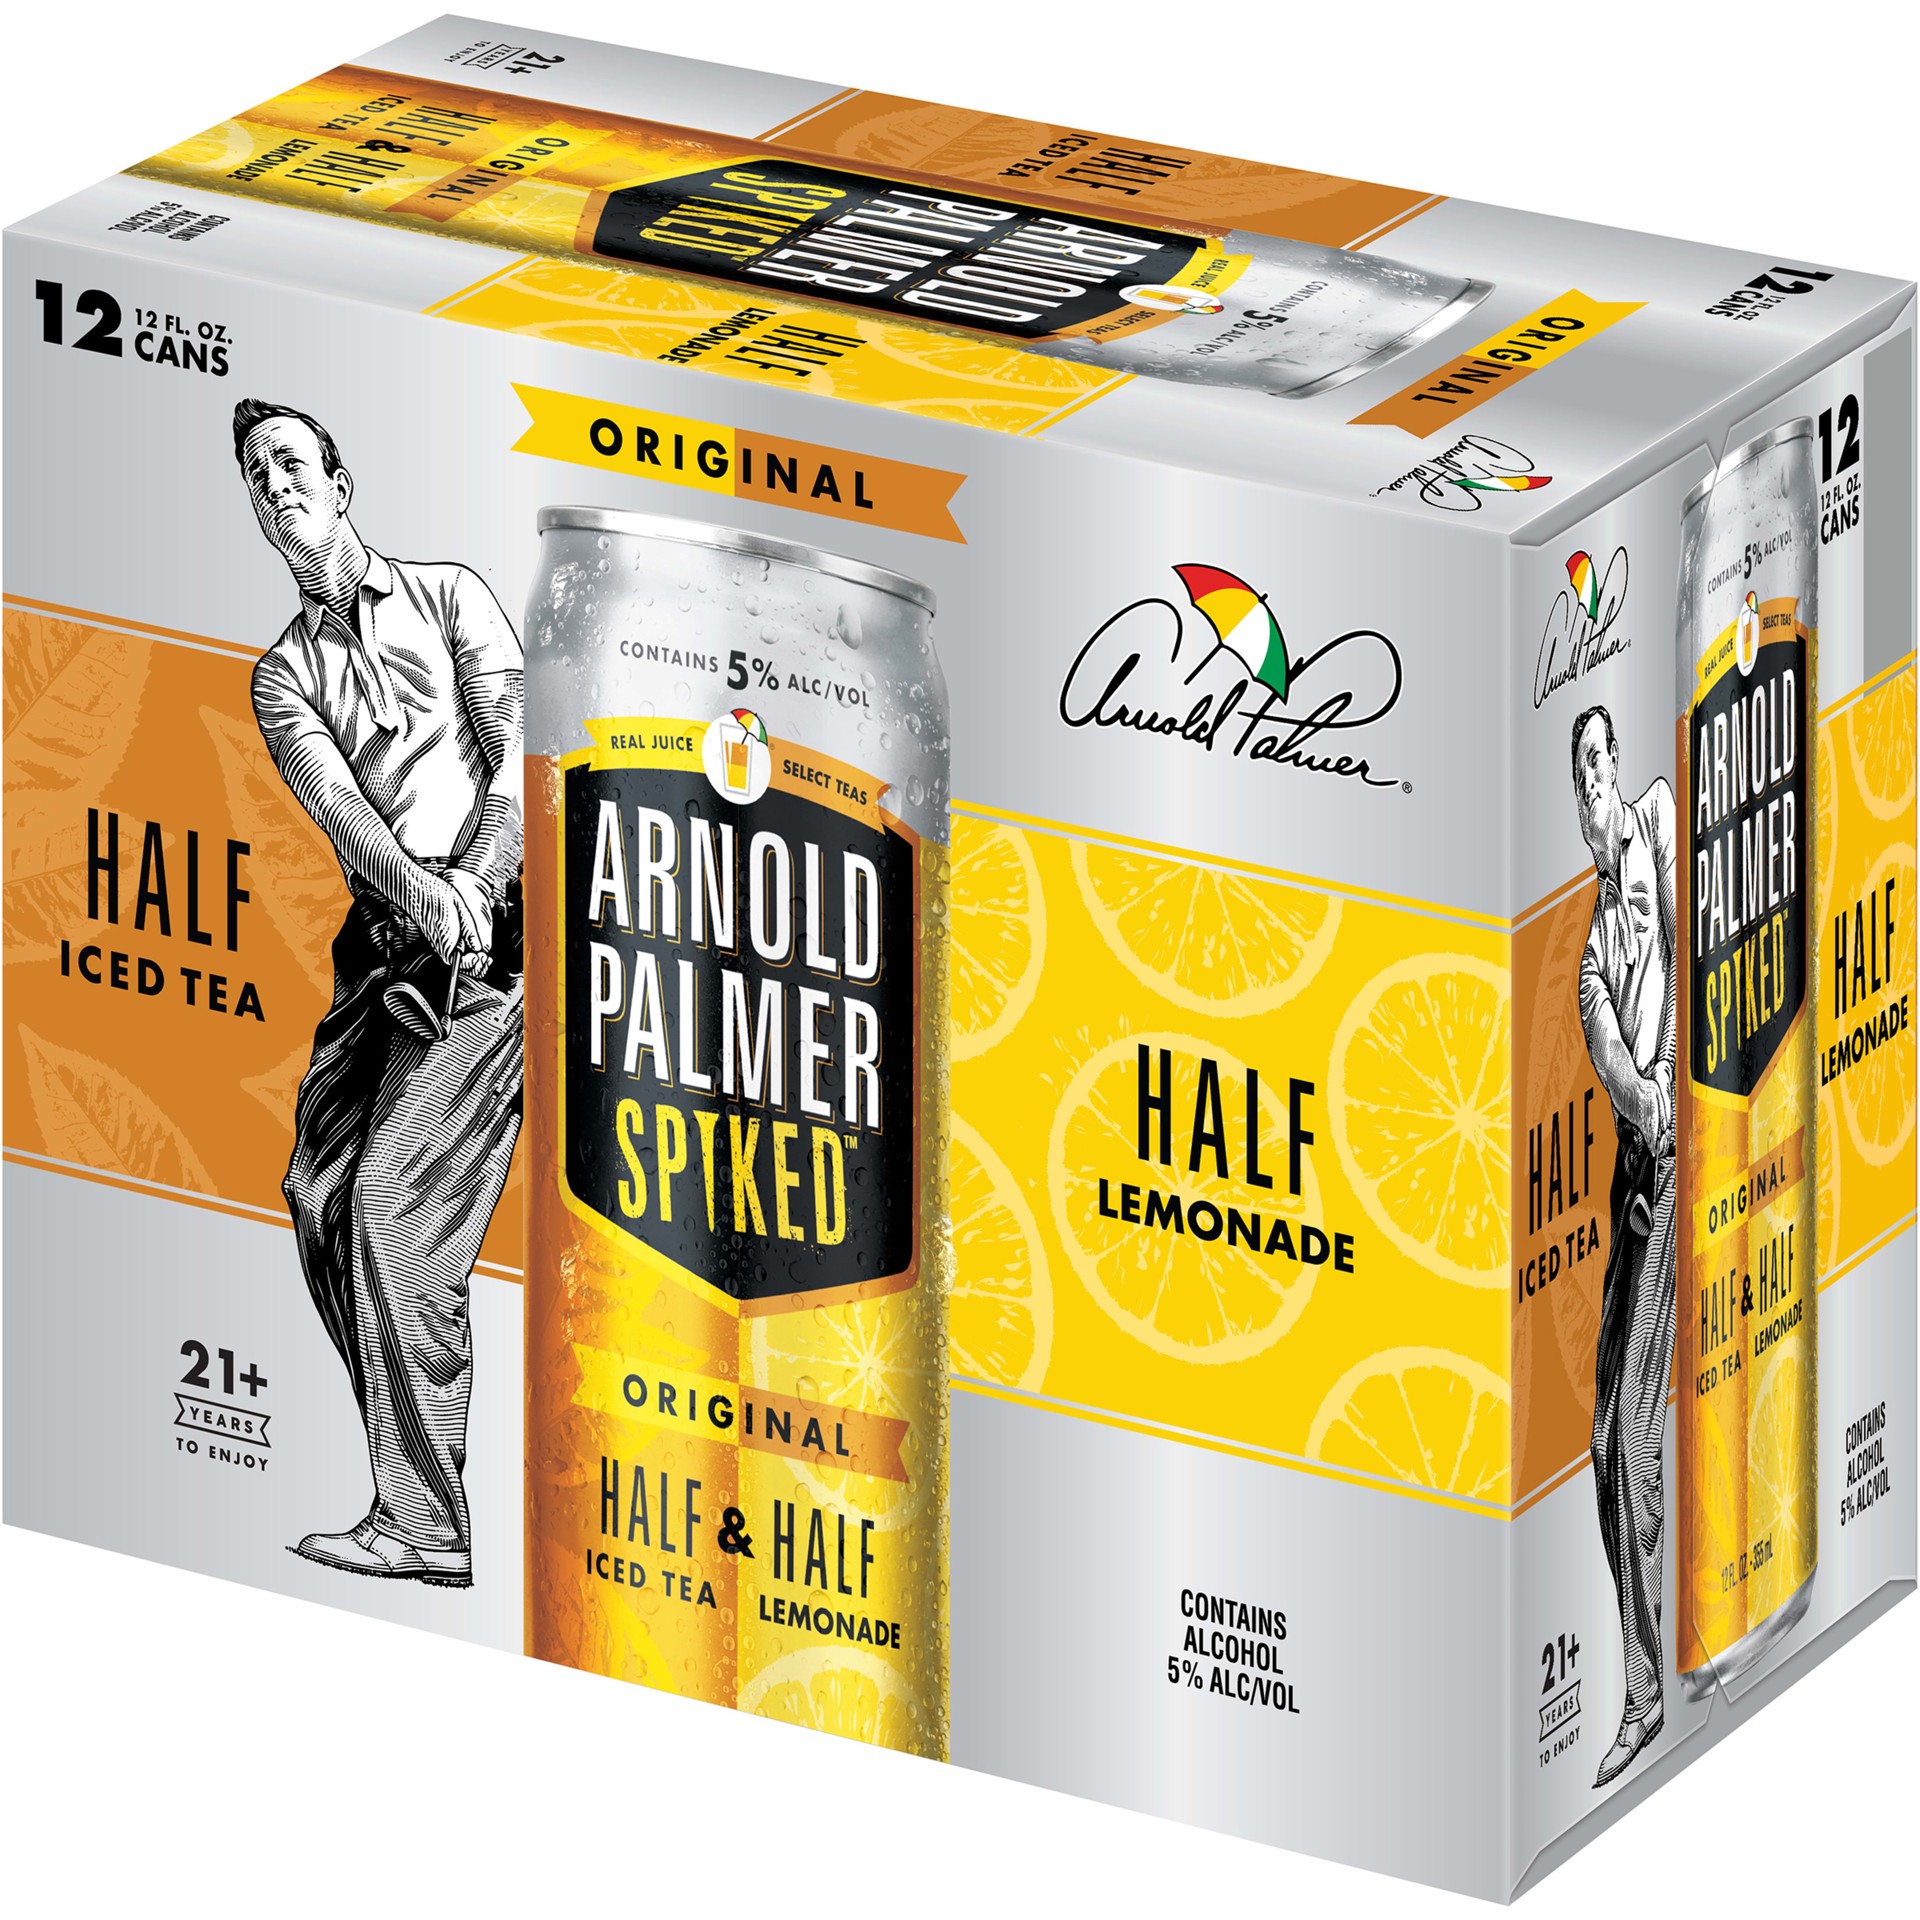 slide 4 of 5, Arnold Palmer Spiked Half & Half Original Arnold Palmer Spiked Original Half & Half Iced Tea Lemonade, 12 Pack, 12 fl oz Cans, 5% ABV, 12 fl oz